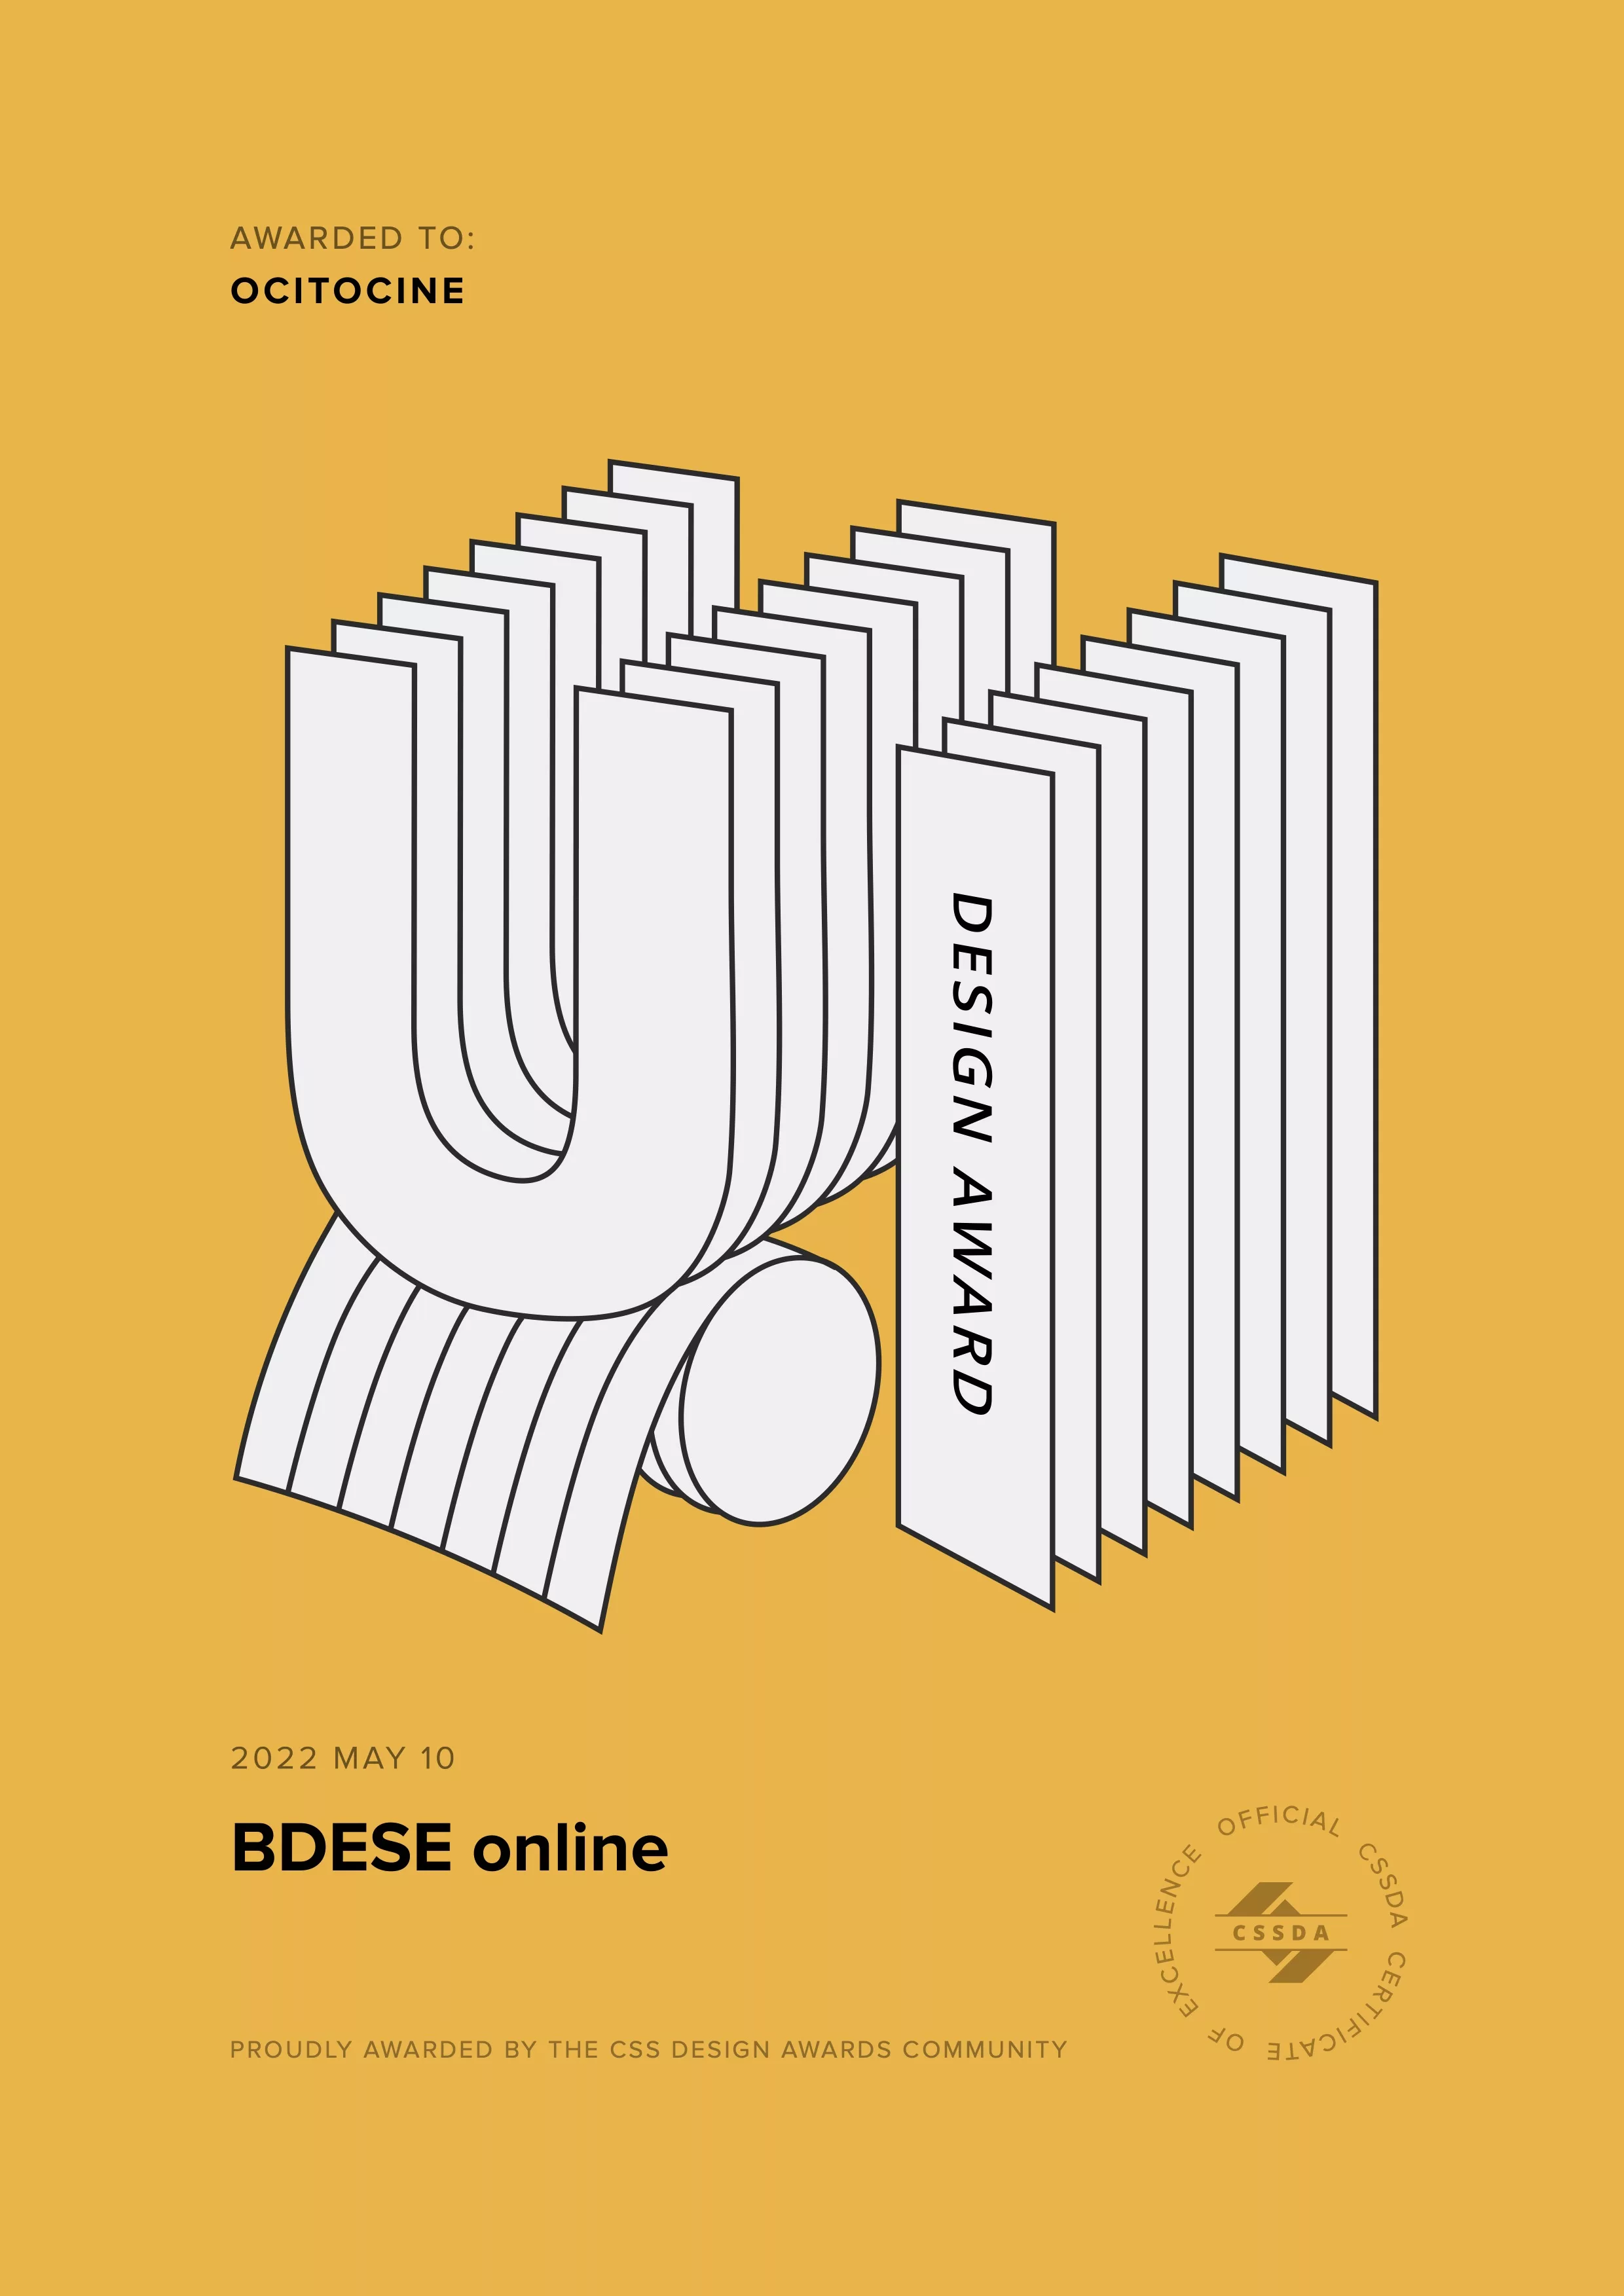 Ocitocine, agence créative web et branding, a remporté un prix "CSSDA UI Design Award" pour la réalisation du site web bdes-online.fr